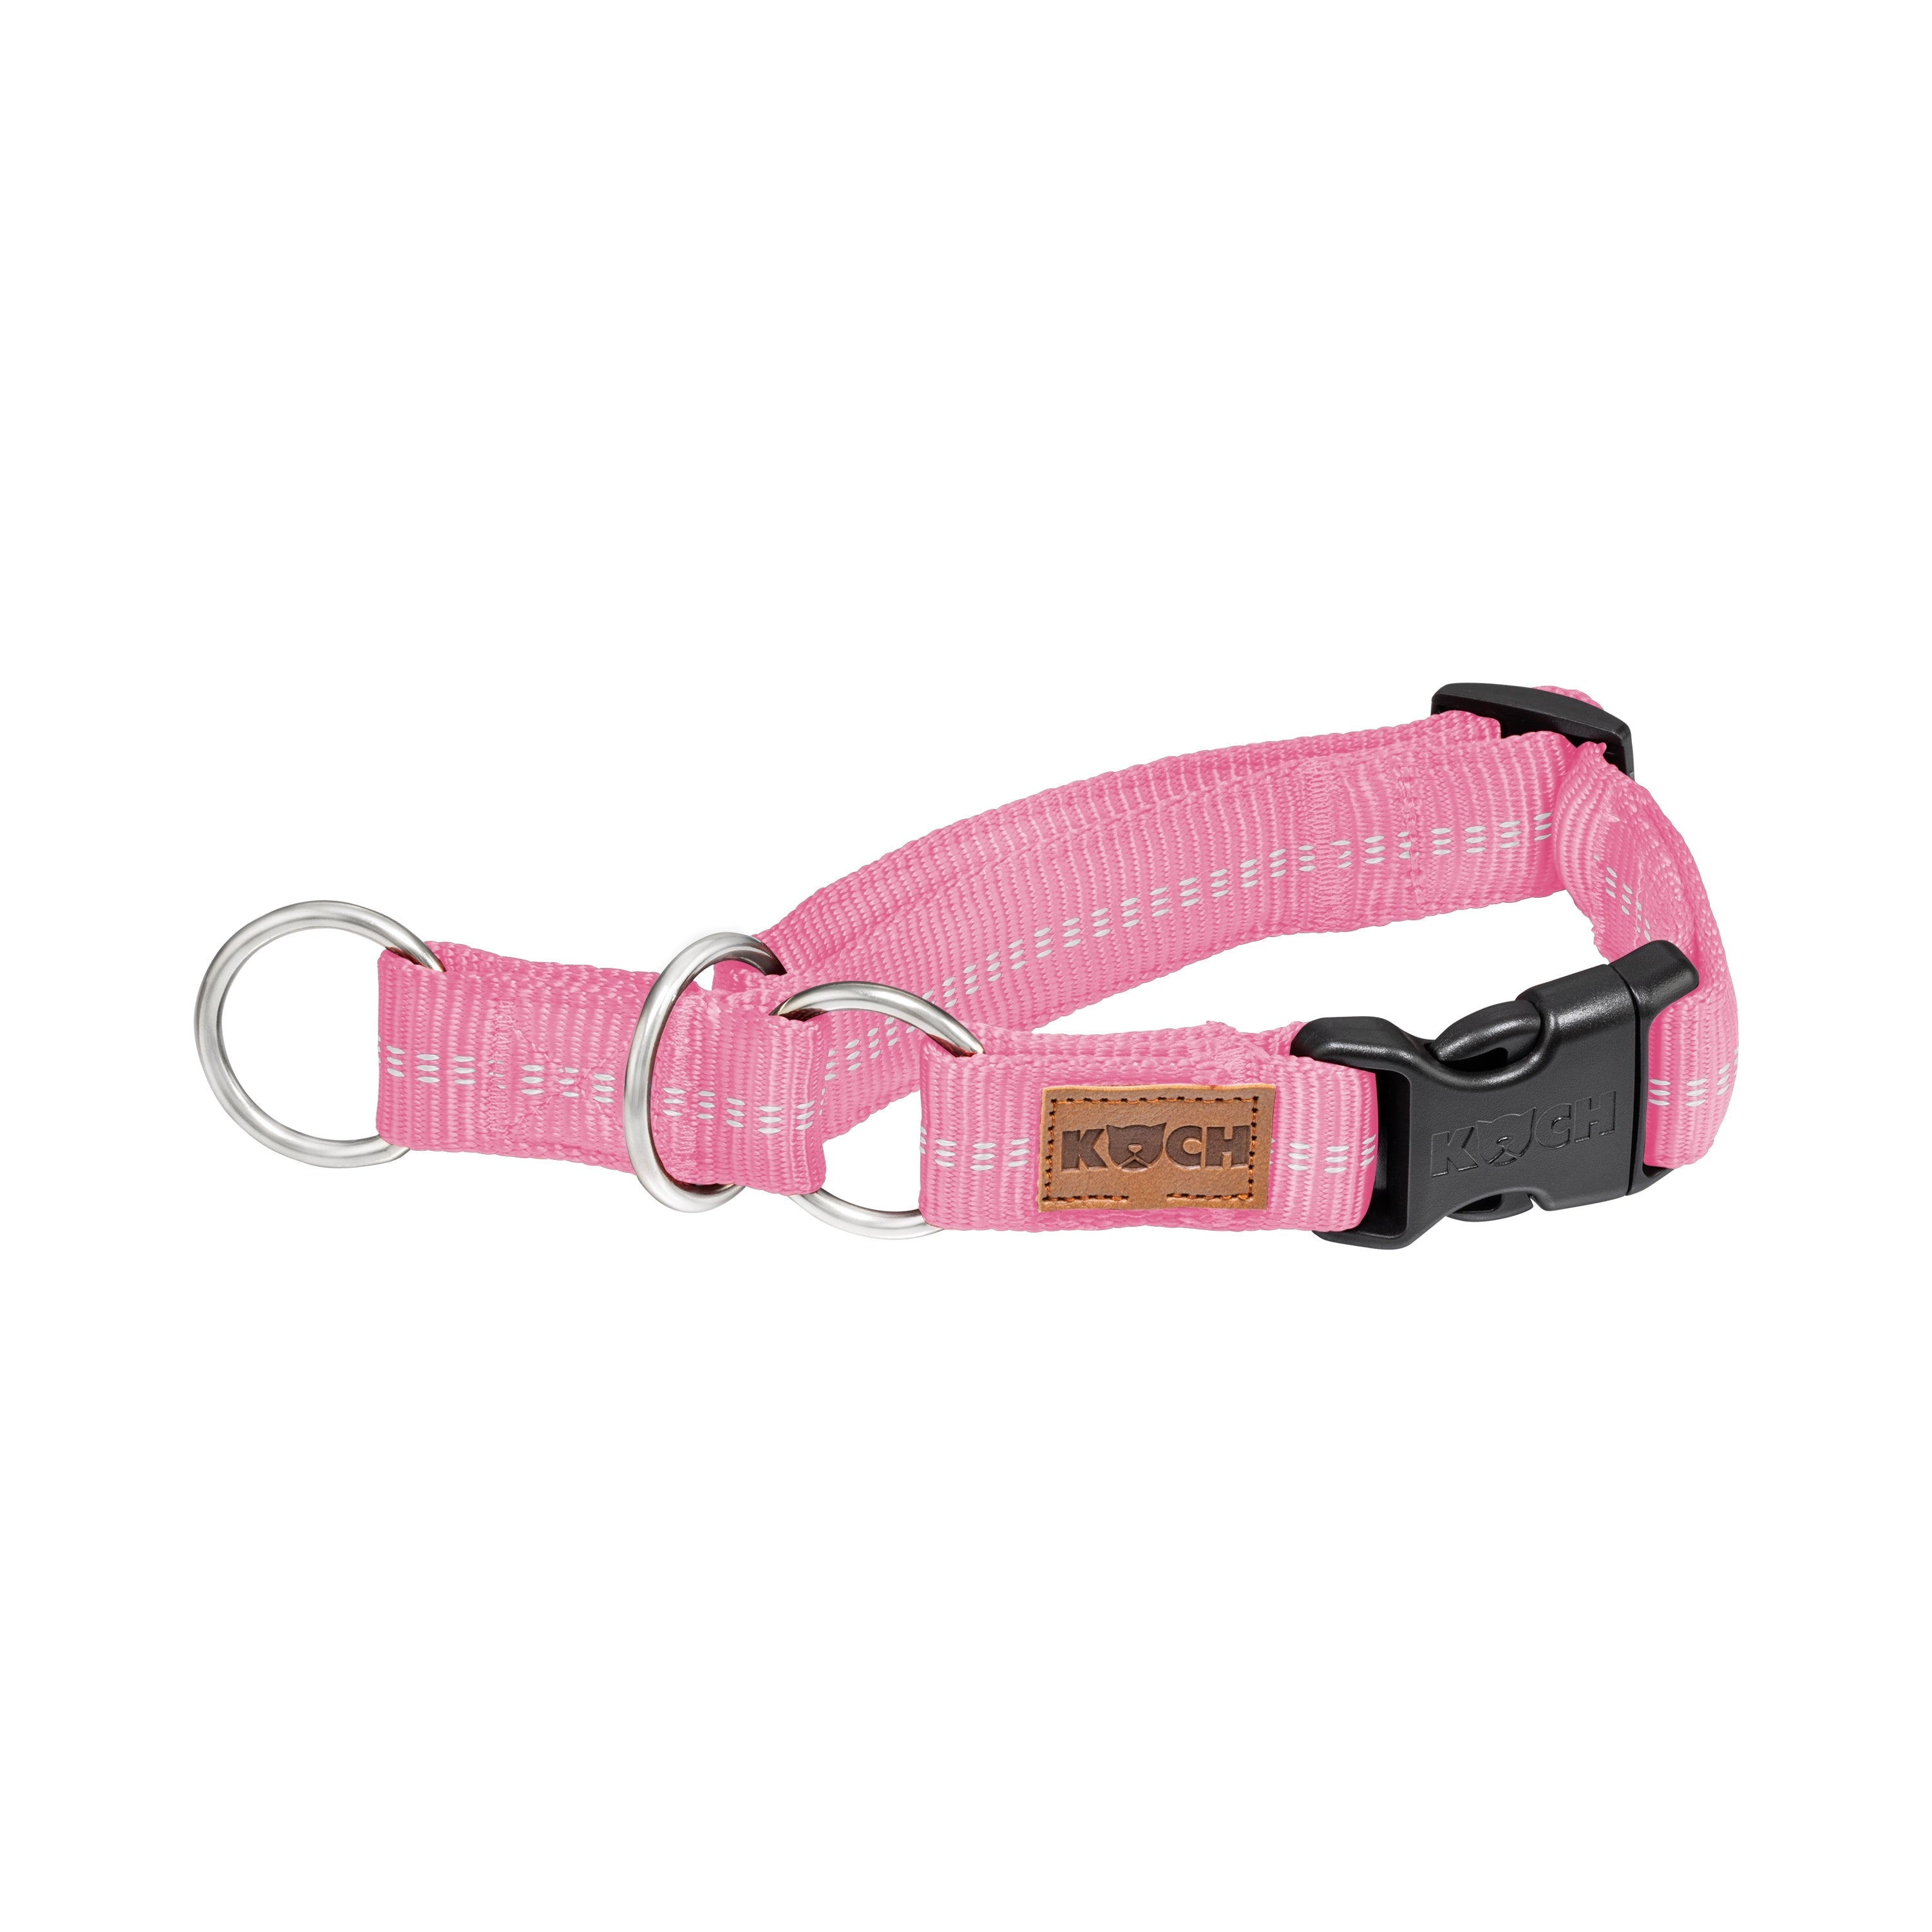 KOCH Premium Zugstopp-Halsband gepolstert rosa mit Kennfäden #farbe_rosa mit Kennfäden